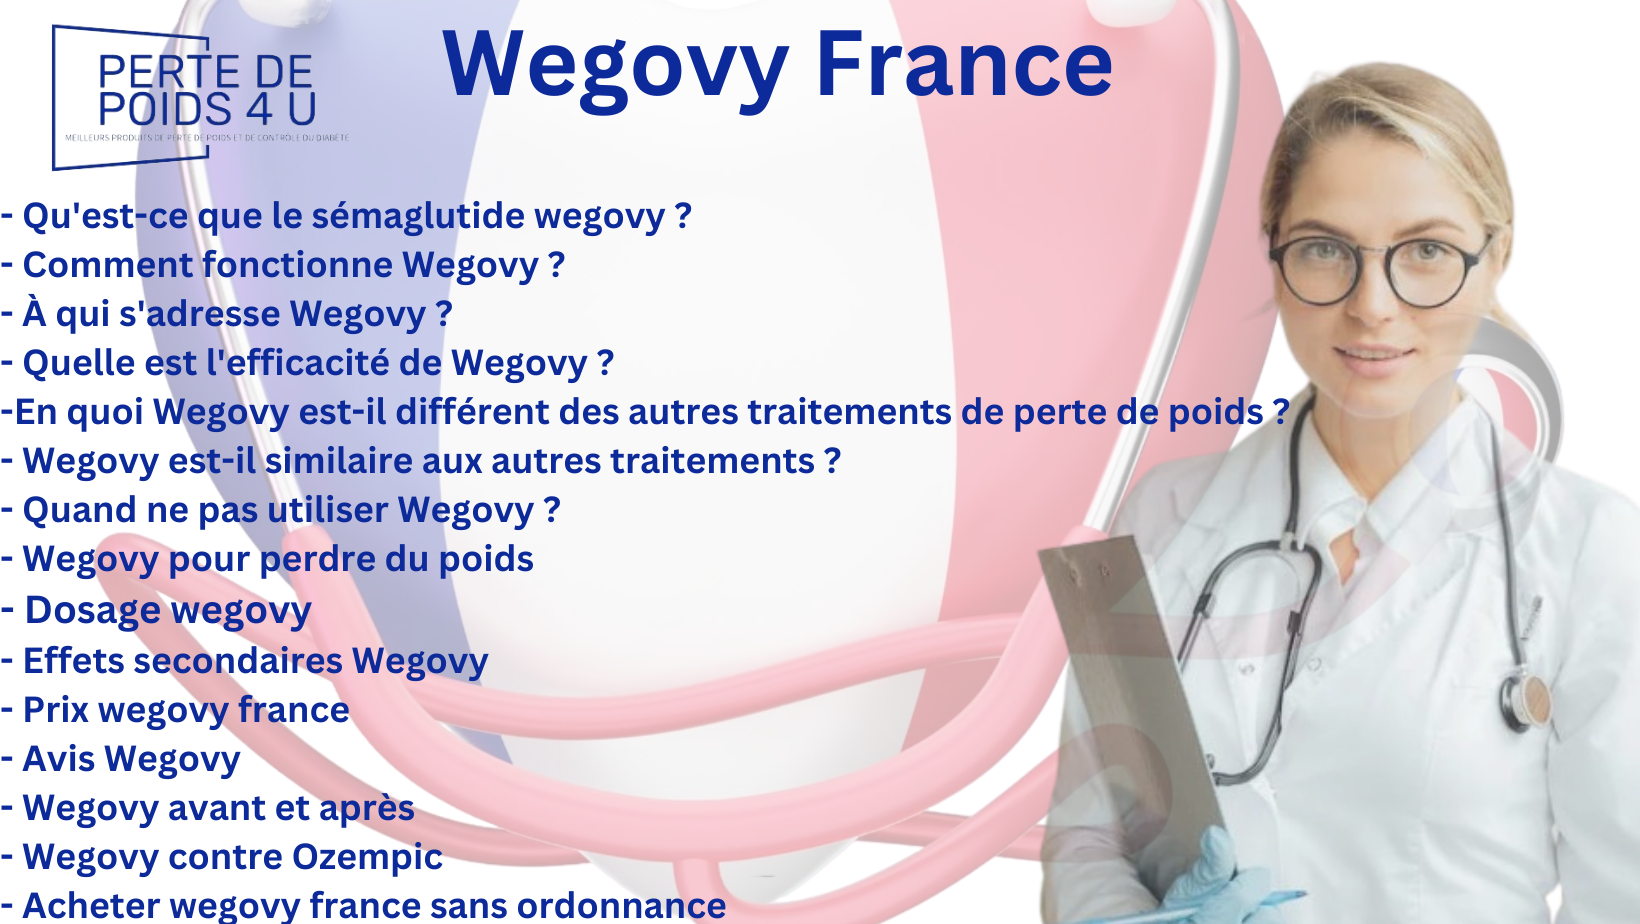 Wegovy France